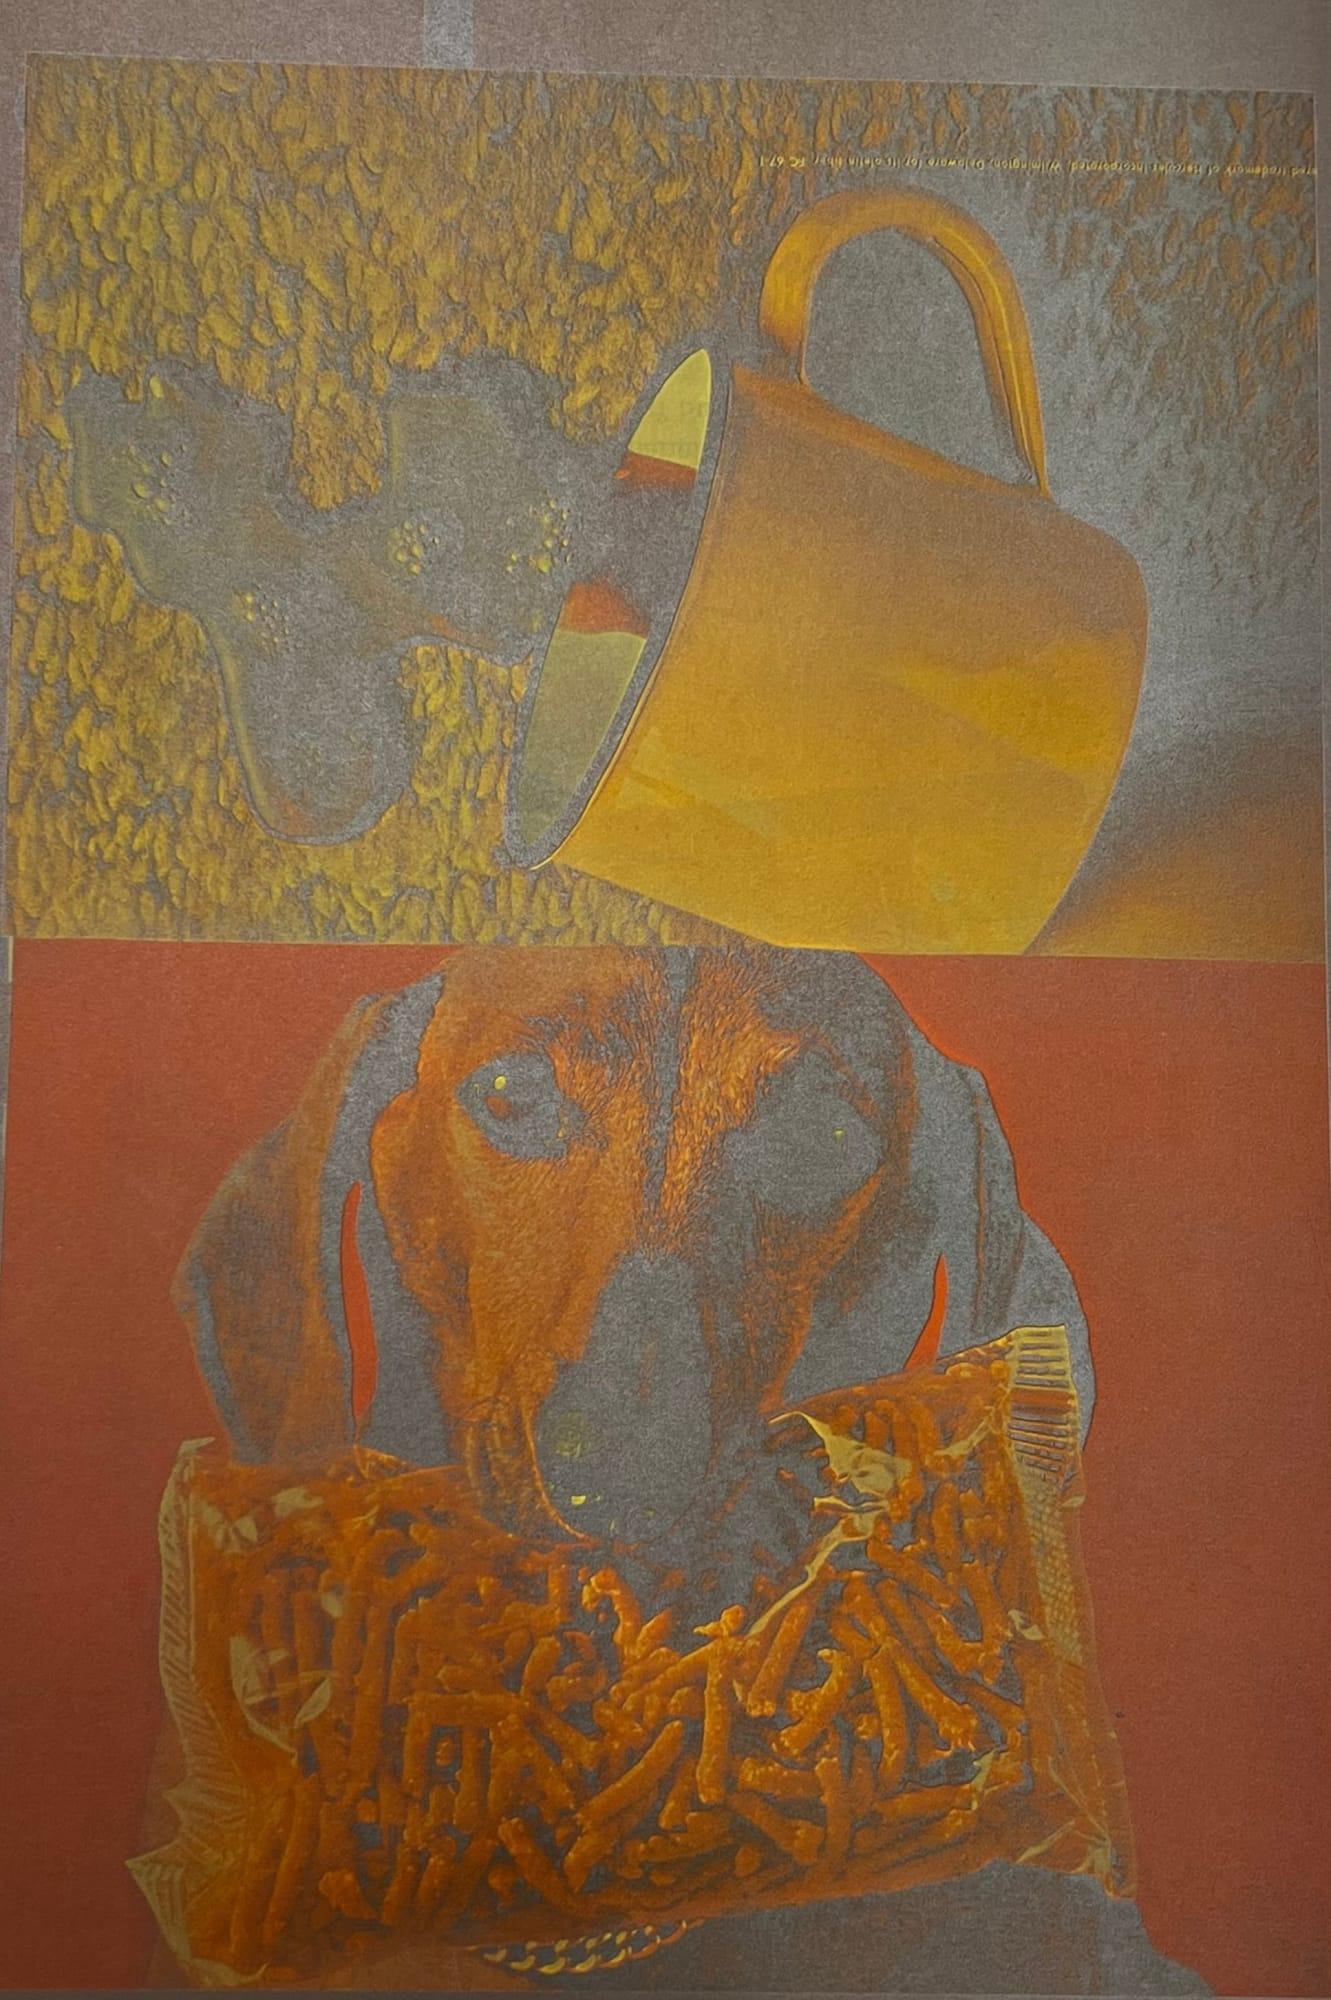 Chien et tasse

Par Eduardo Paolozzi

Eduardo Paolozzi (1924-2005) était un artiste et sculpteur écossais pionnier associé au mouvement Pop Art. Réputé pour ses collages, il a habilement mélangé des éléments de la culture populaire, de la